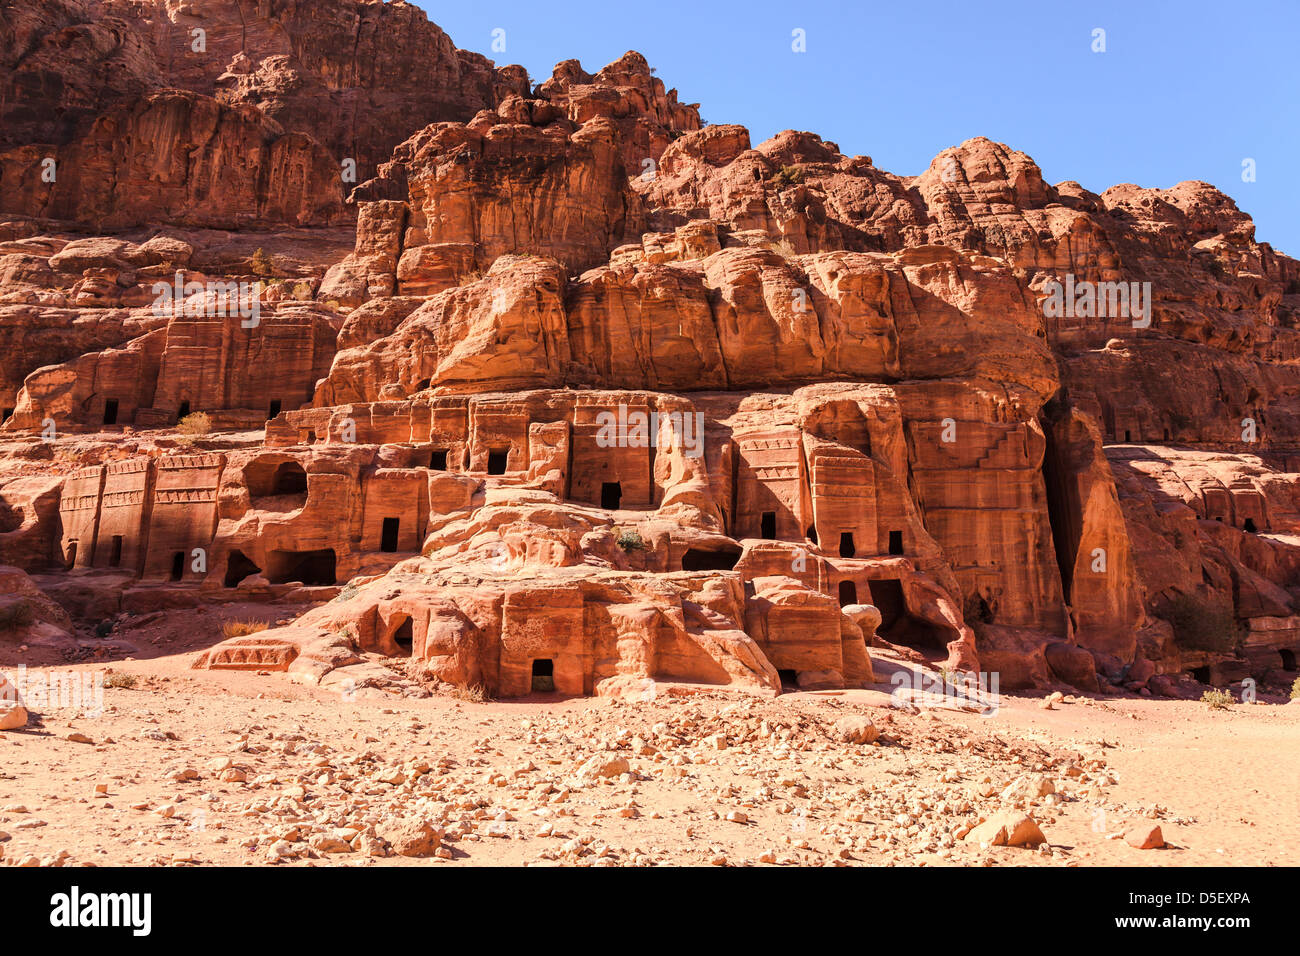 cliffside tombs at petra, jordan Stock Photo